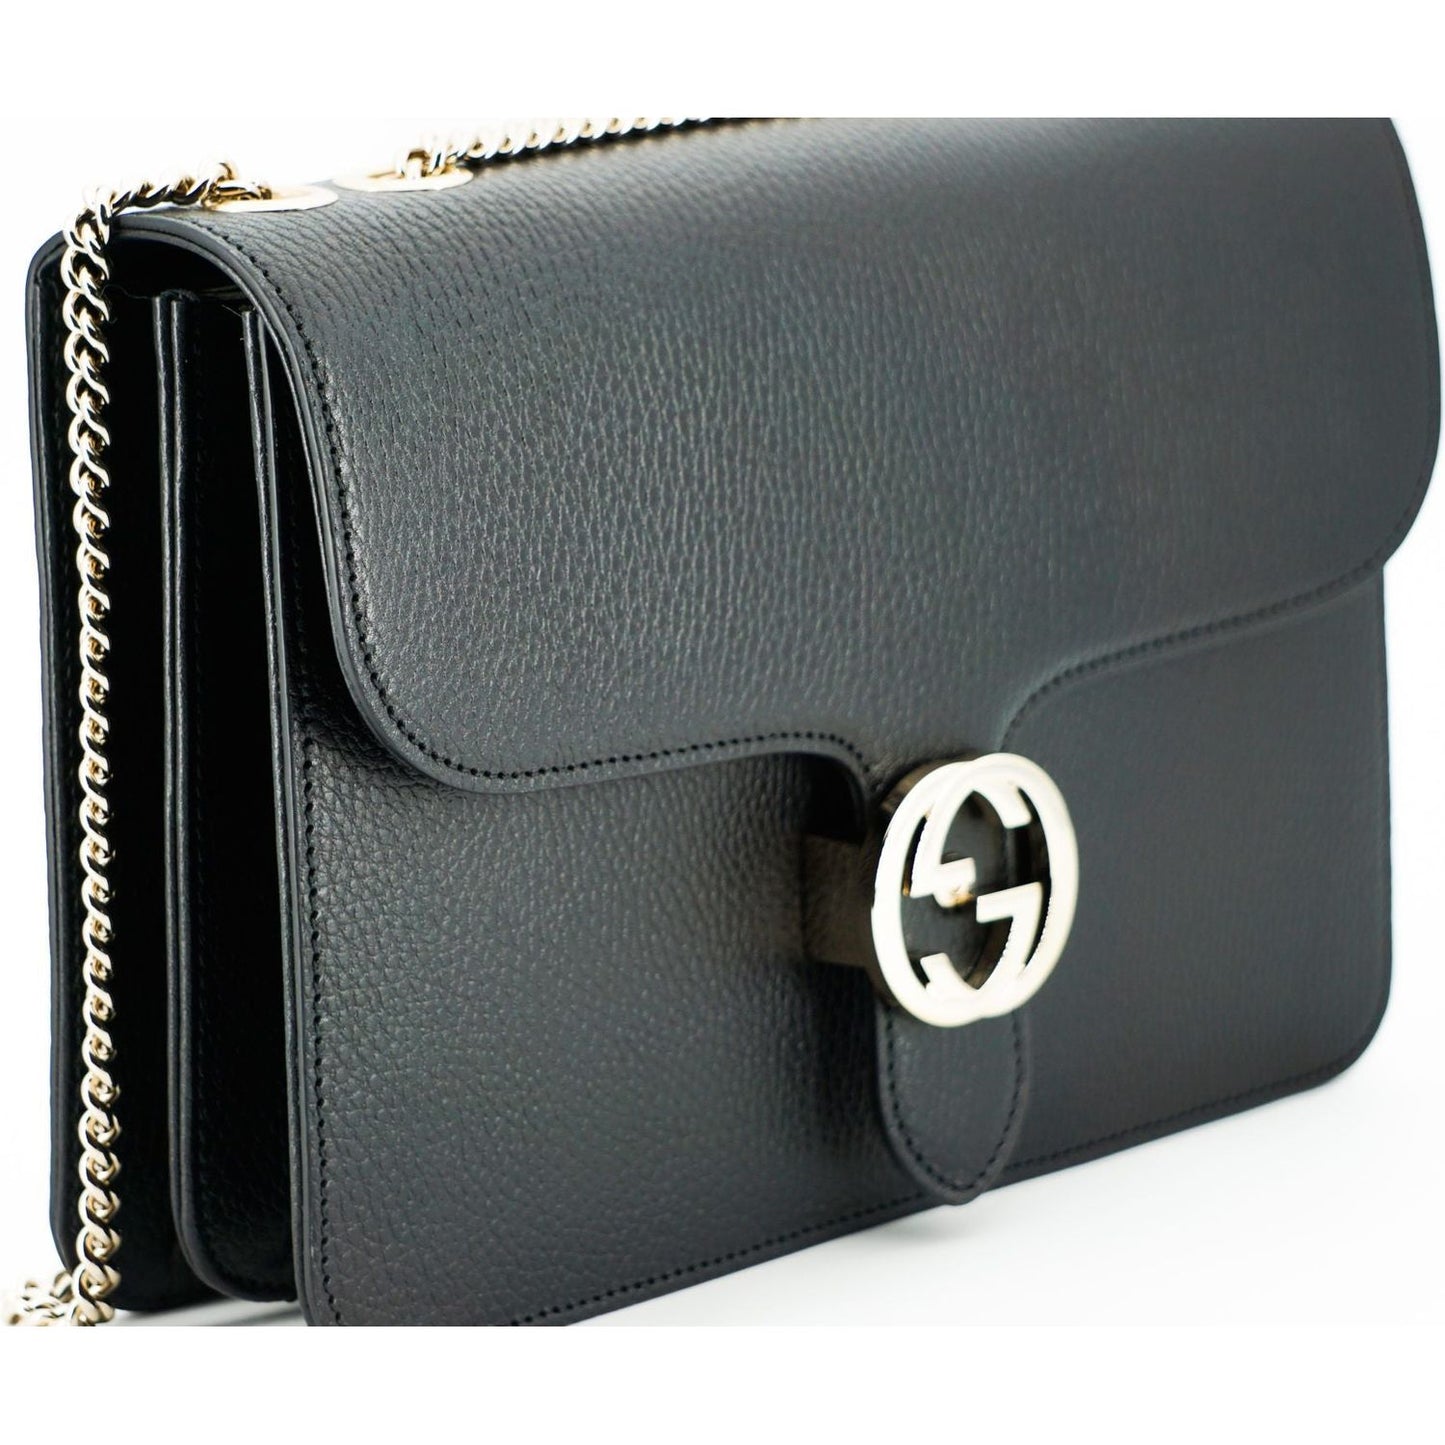 Gucci Elegant Calf Leather Shoulder Bag black-calf-leather-dollar-shoulder-bag-2 D50040-9-scaled-504e5c41-409.jpg